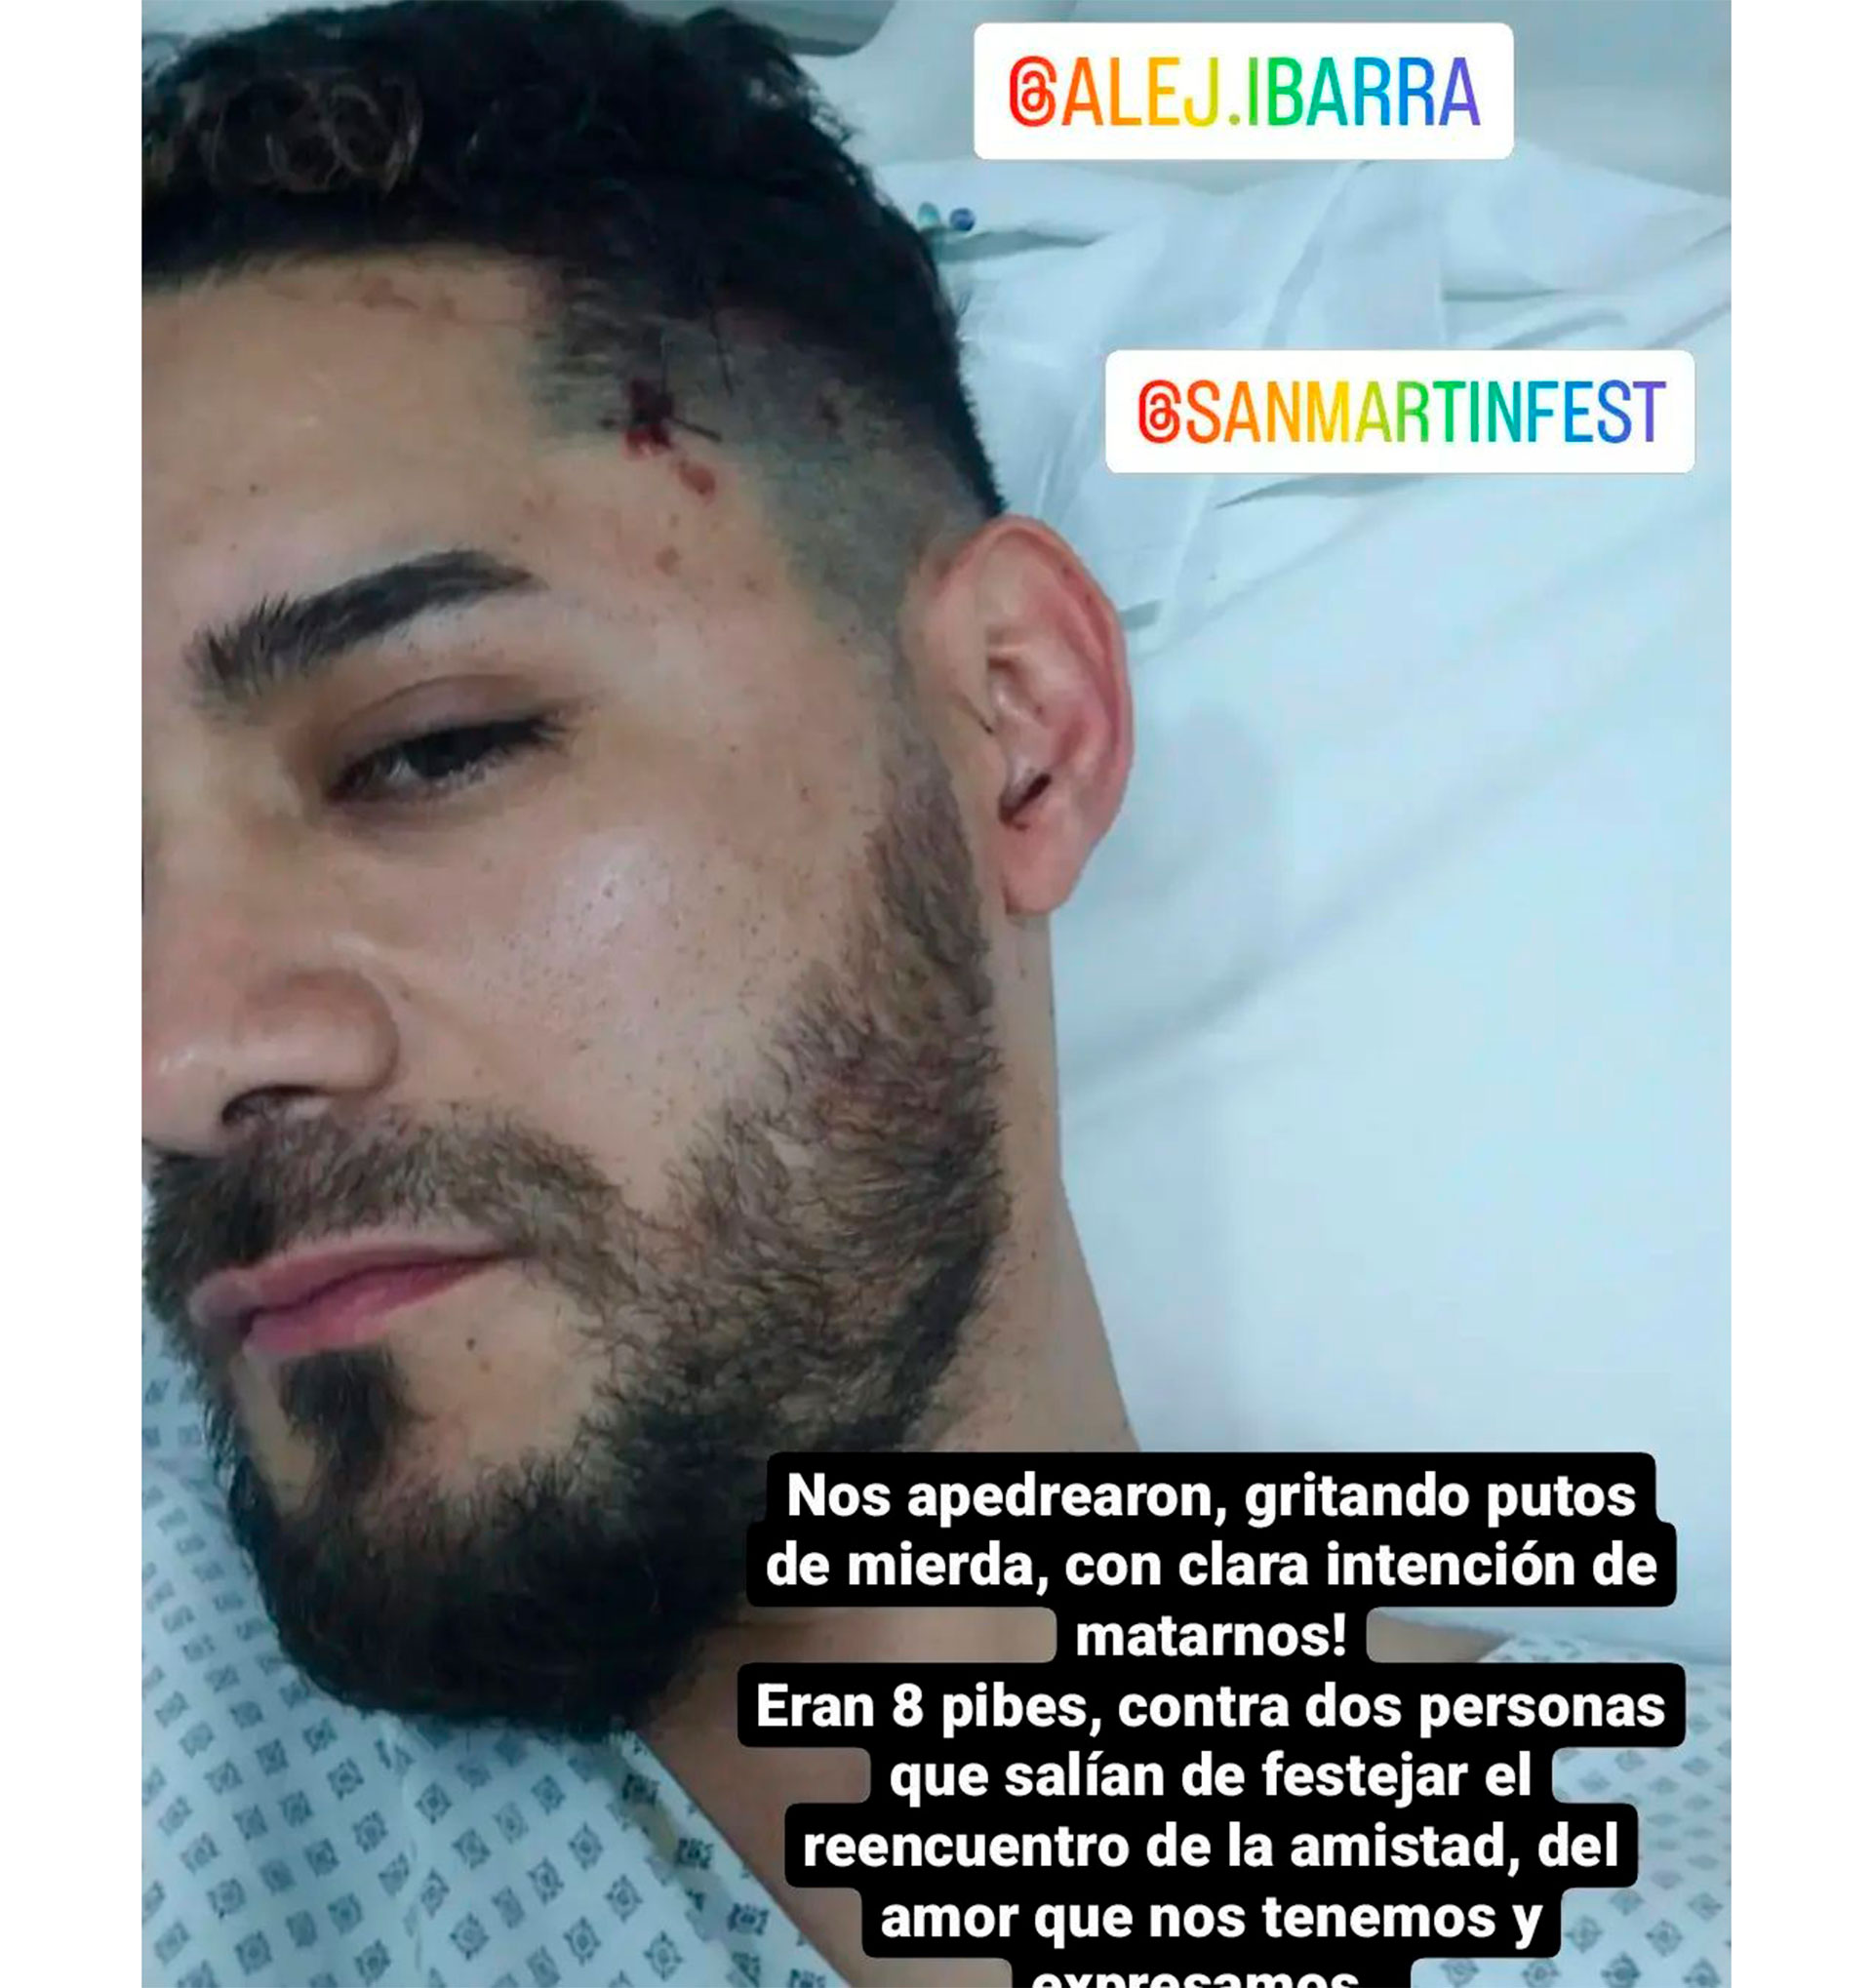 Alejandro muestra los cortes en su rostro mientras está siendo atendido en el hospital